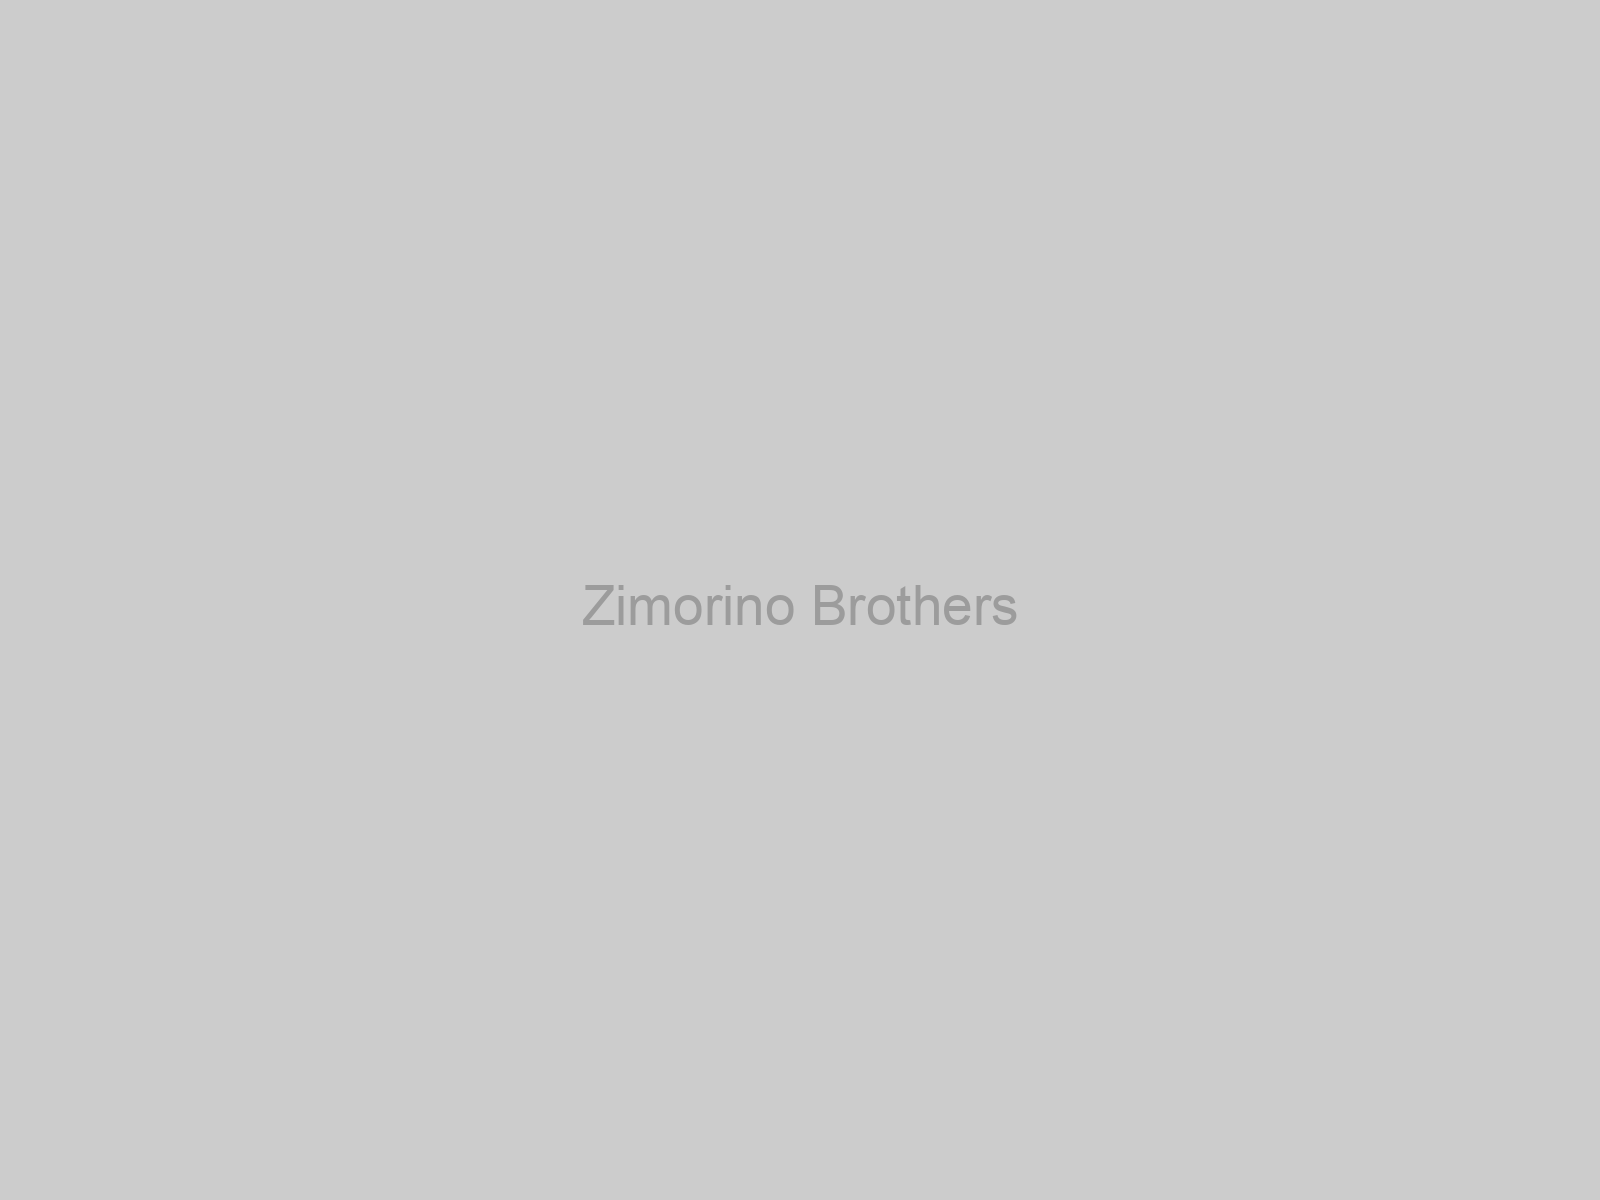 Zimorino Brothers